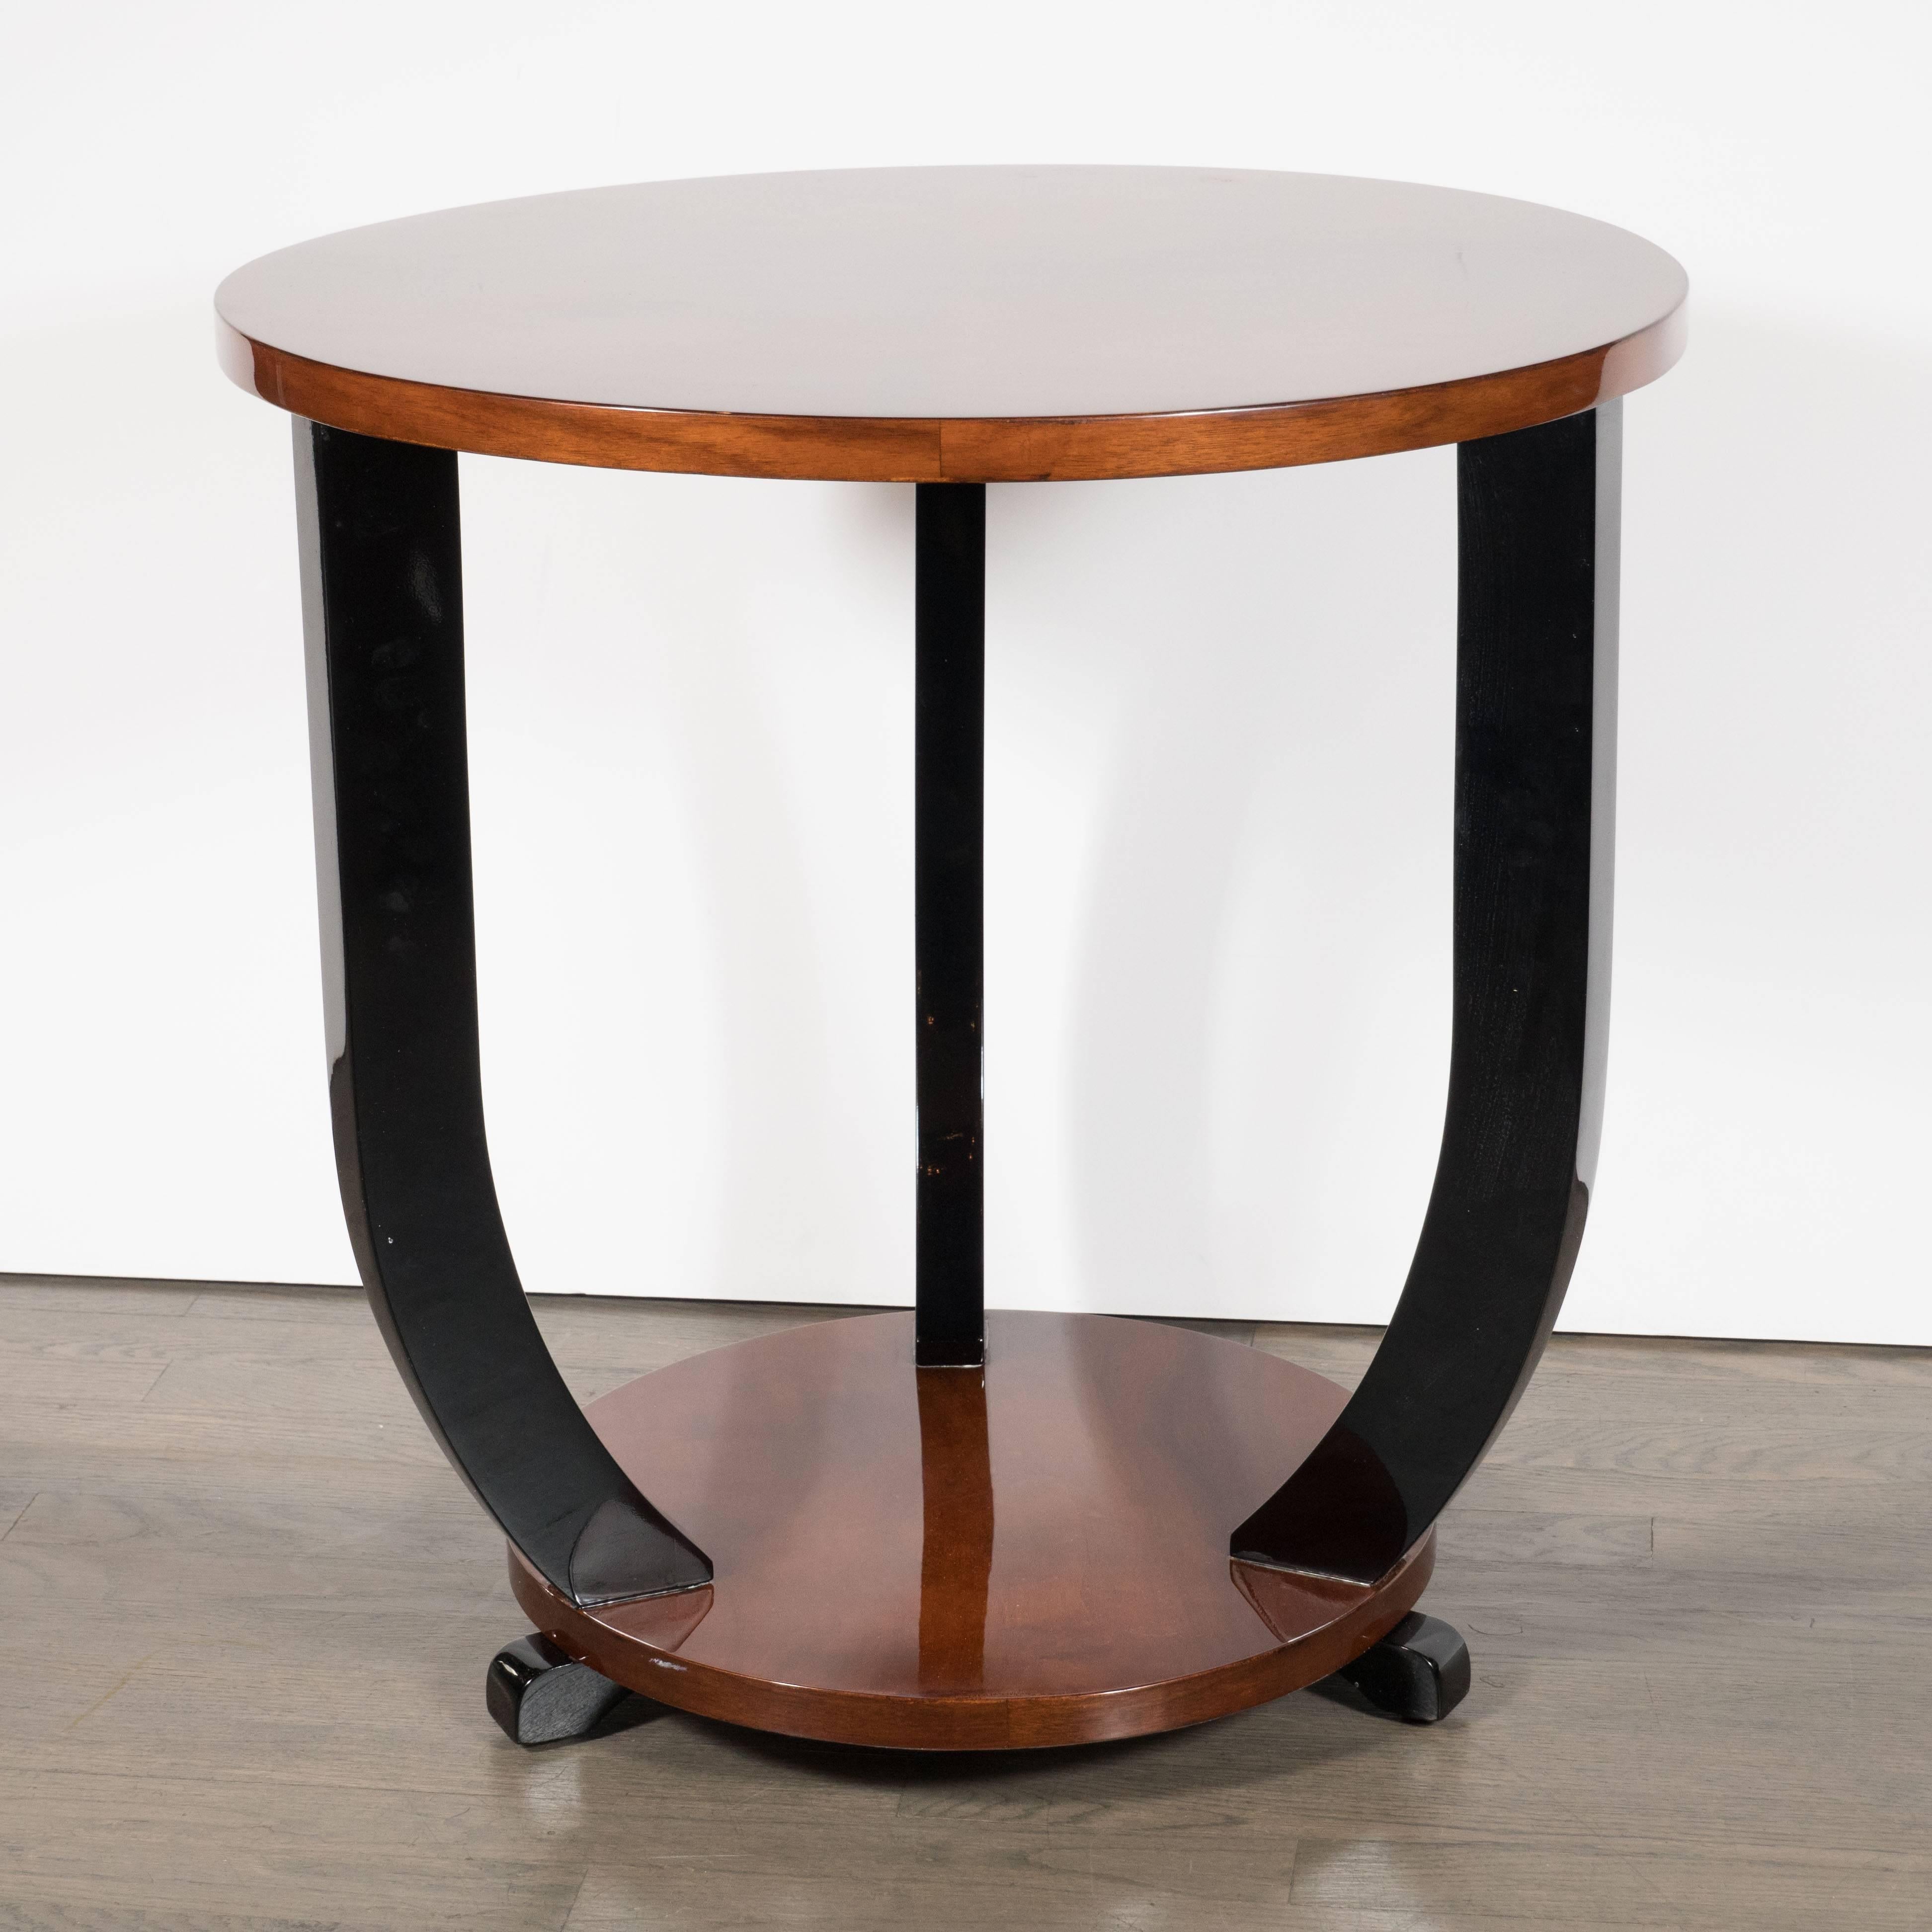 Dieser atemberaubende Art Deco Gueridon Tisch wurde um 1935 in Frankreich hergestellt. Es hat zwei runde, buchstabierte Nussbaumplatten, die durch geschwungene, schwarz lackierte Stützen verbunden sind. Unter der unteren, runden Nussbaum-Etage ragen